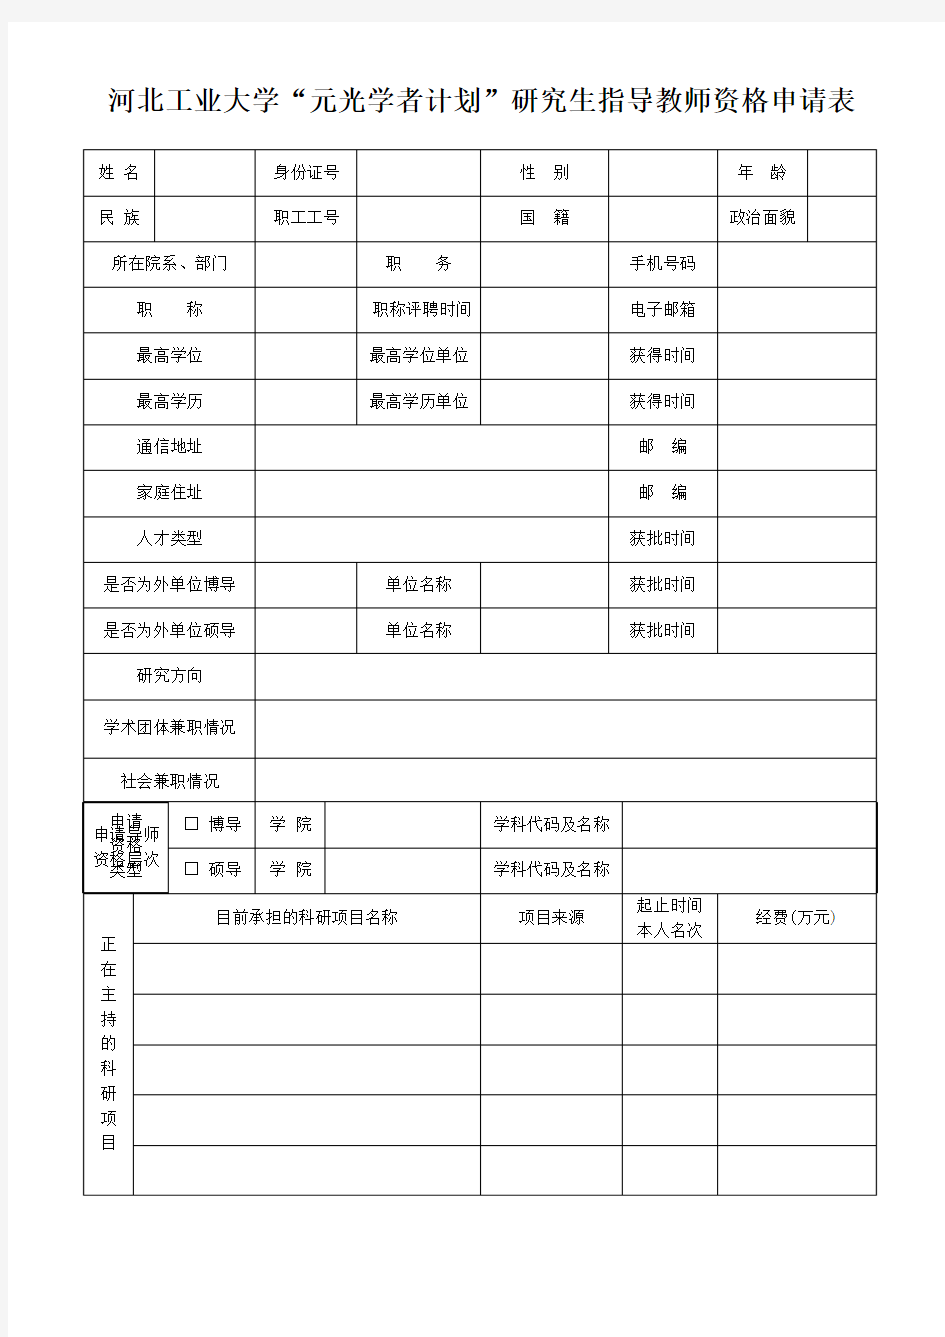 河北工业大学元光学者计划研究生指导教师资格申请表